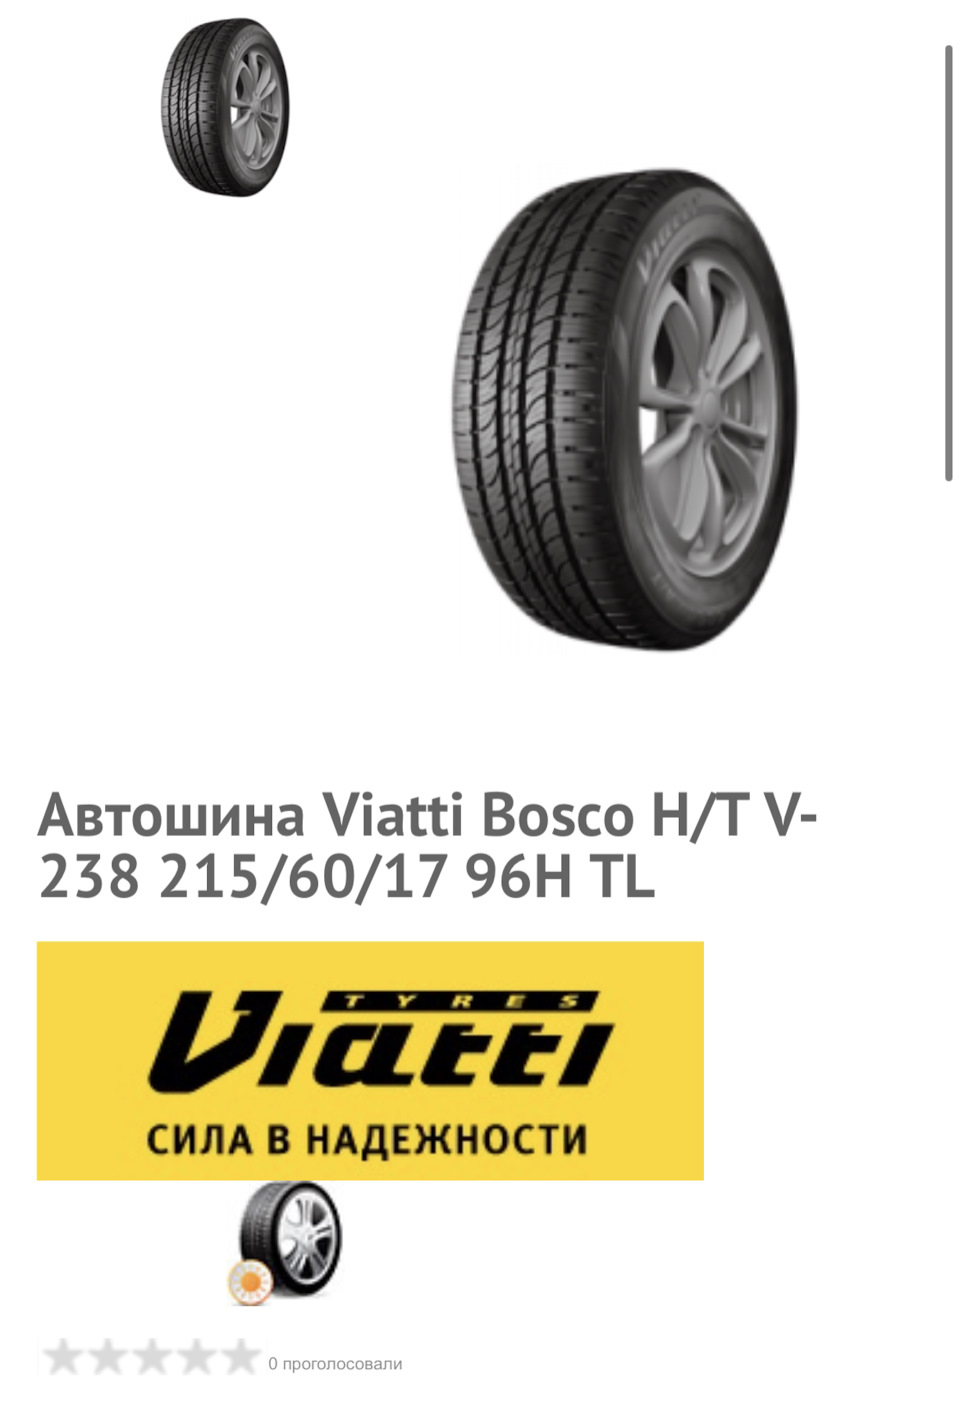 Шины viatti bosco v 238 отзывы. Viatti Bosco h/t (v-238). Viatti Bosco h/t v-238 квронаклейка. Вес покрышки r17. Летние шины 215/60 r17 рифленые.